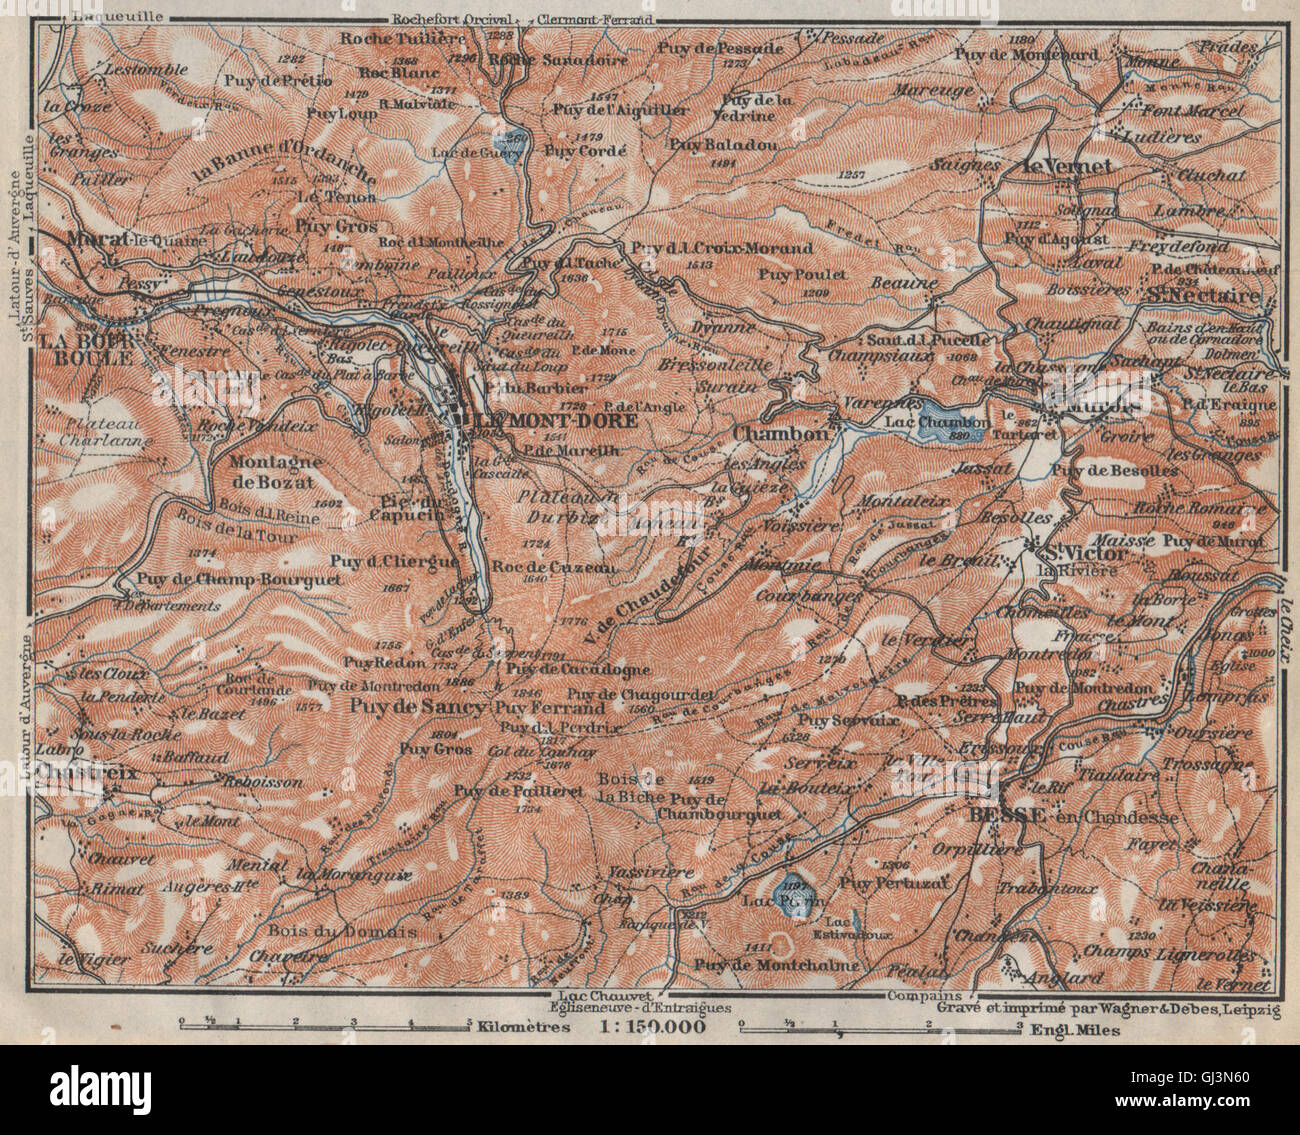 LE MONT-DORE. Auvergne La Bourboule Sancy Besse Chambon. Puy-de-Dôme, 1914 map Stock Photo